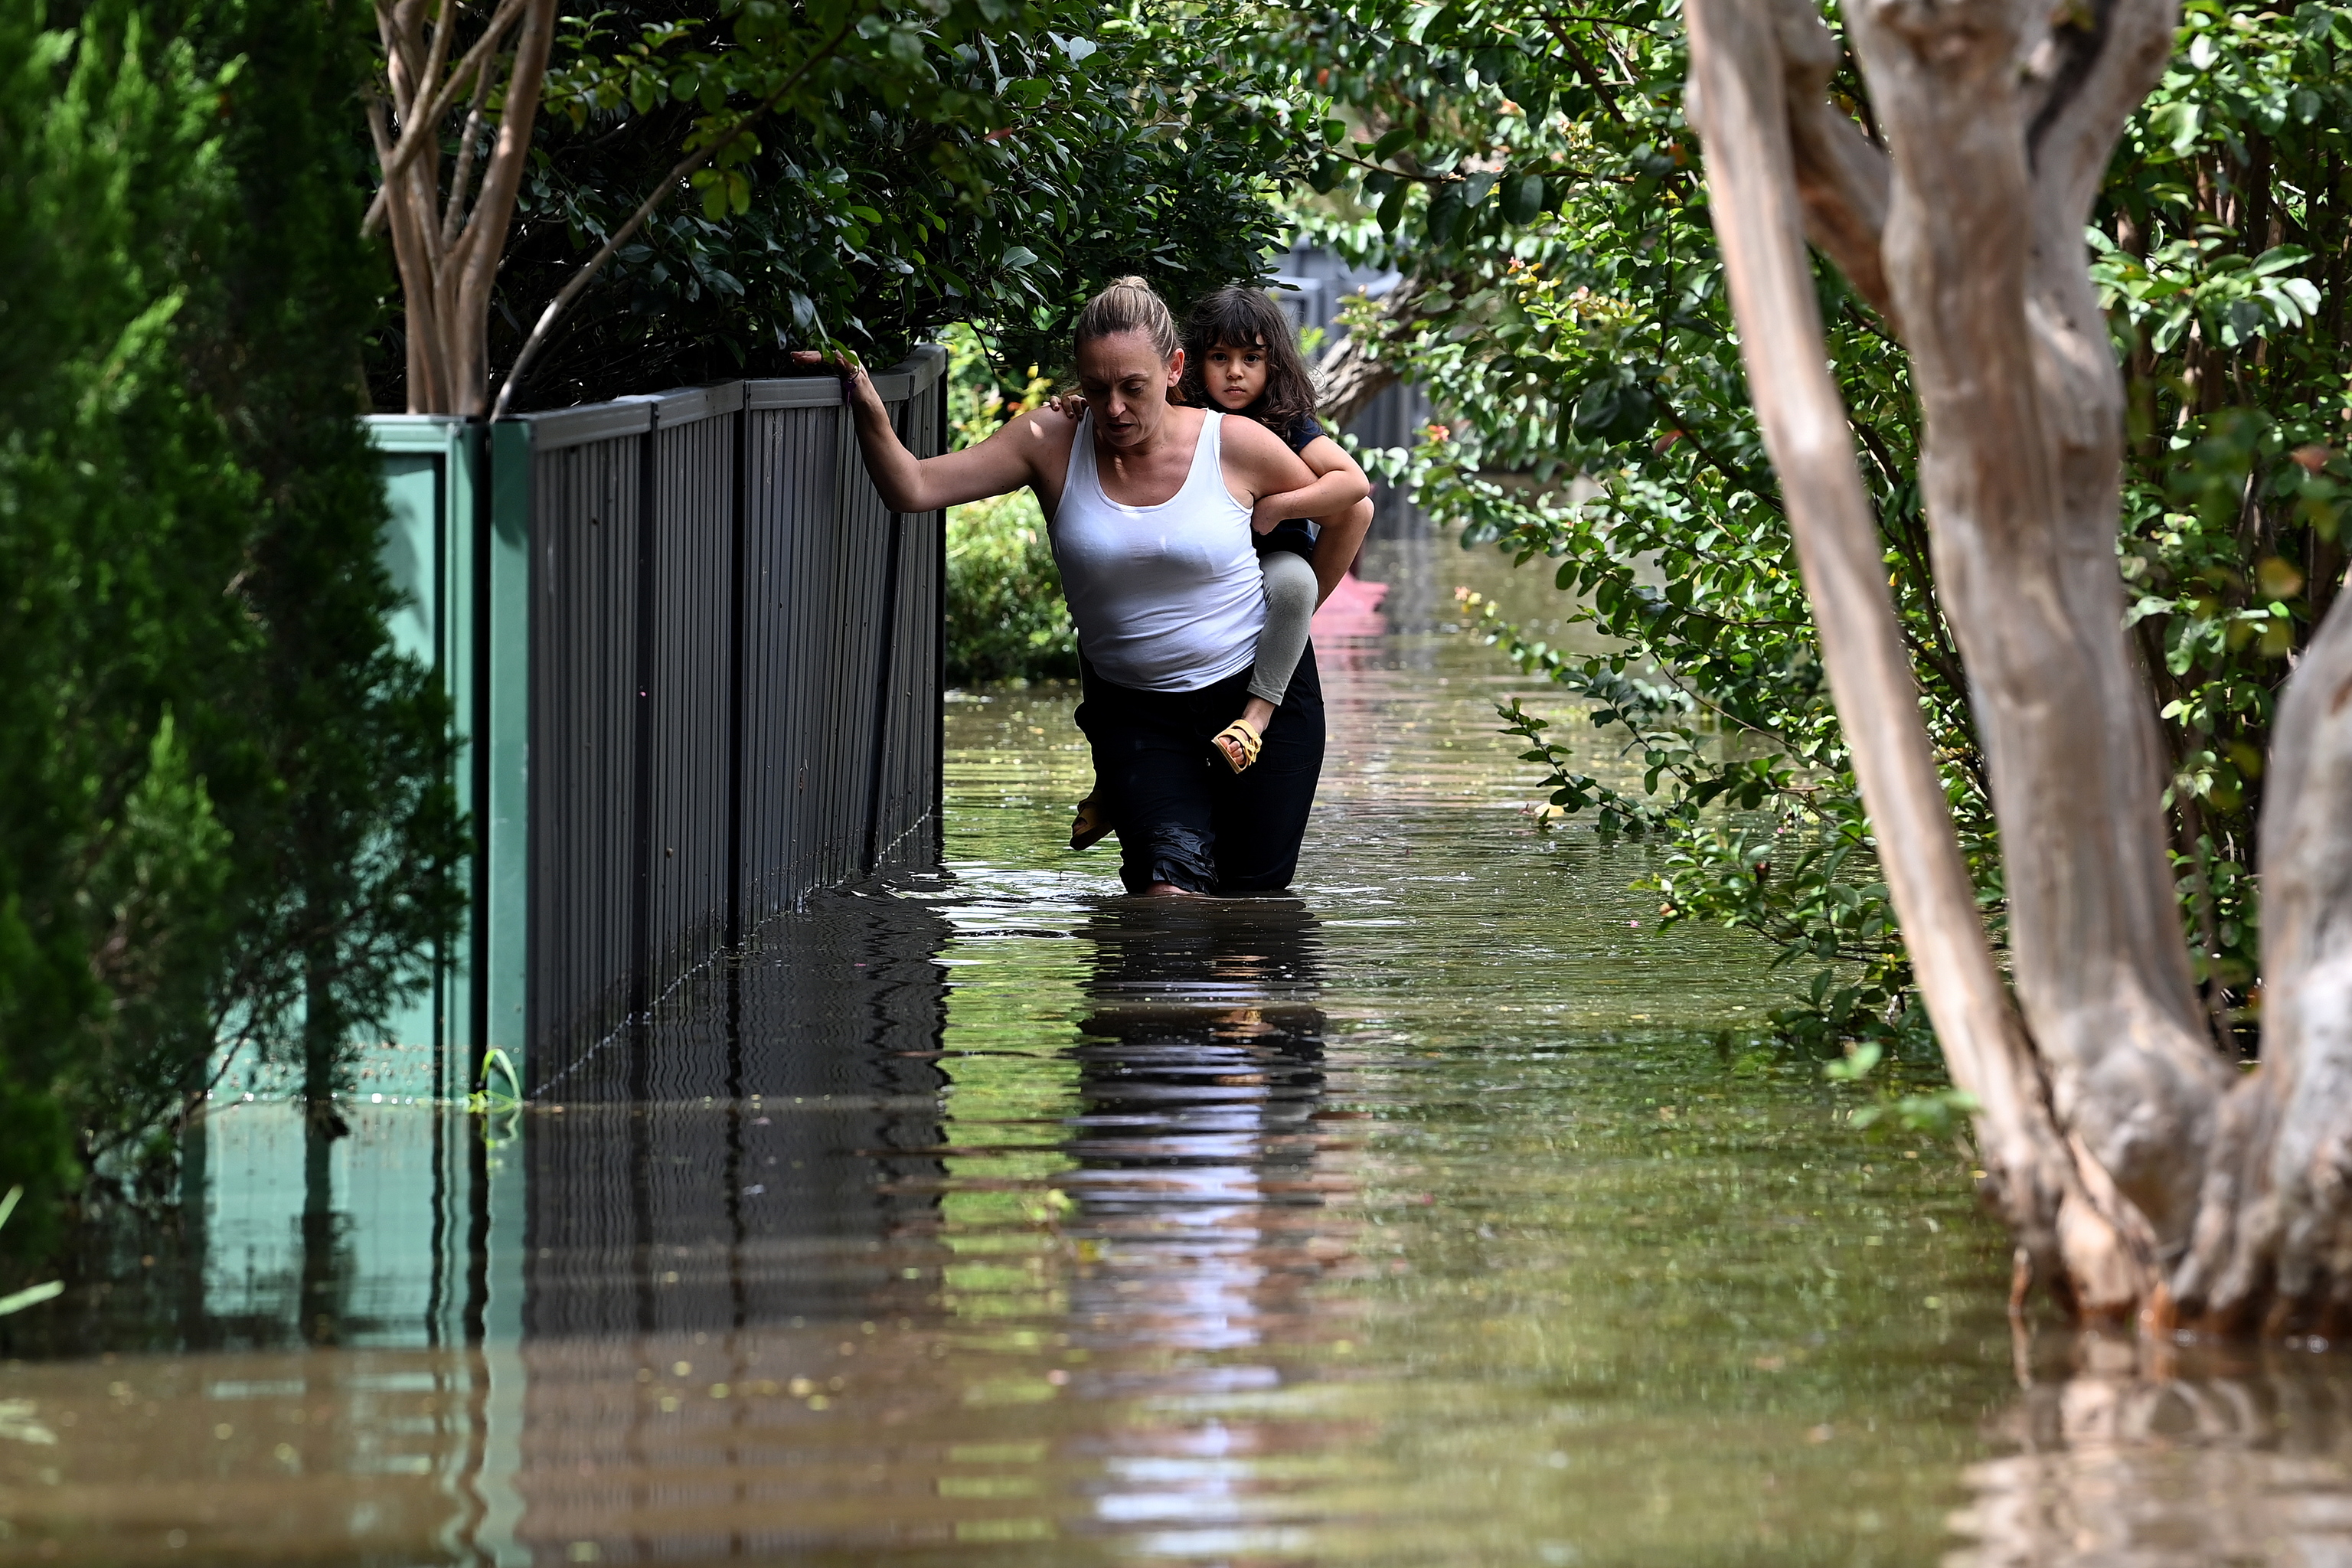 Inundación en Windsor, al noroeste de Sydney, Australia, 09 de marzo de 2022. Los meteorólogos advierten de que las comunidades que viven a lo largo de 1.000 kilómetros de la costa de Nueva Gales del Sur están a punto de ser empapadas, con posibles nuevas inundaciones y desprendimientos de tierra.